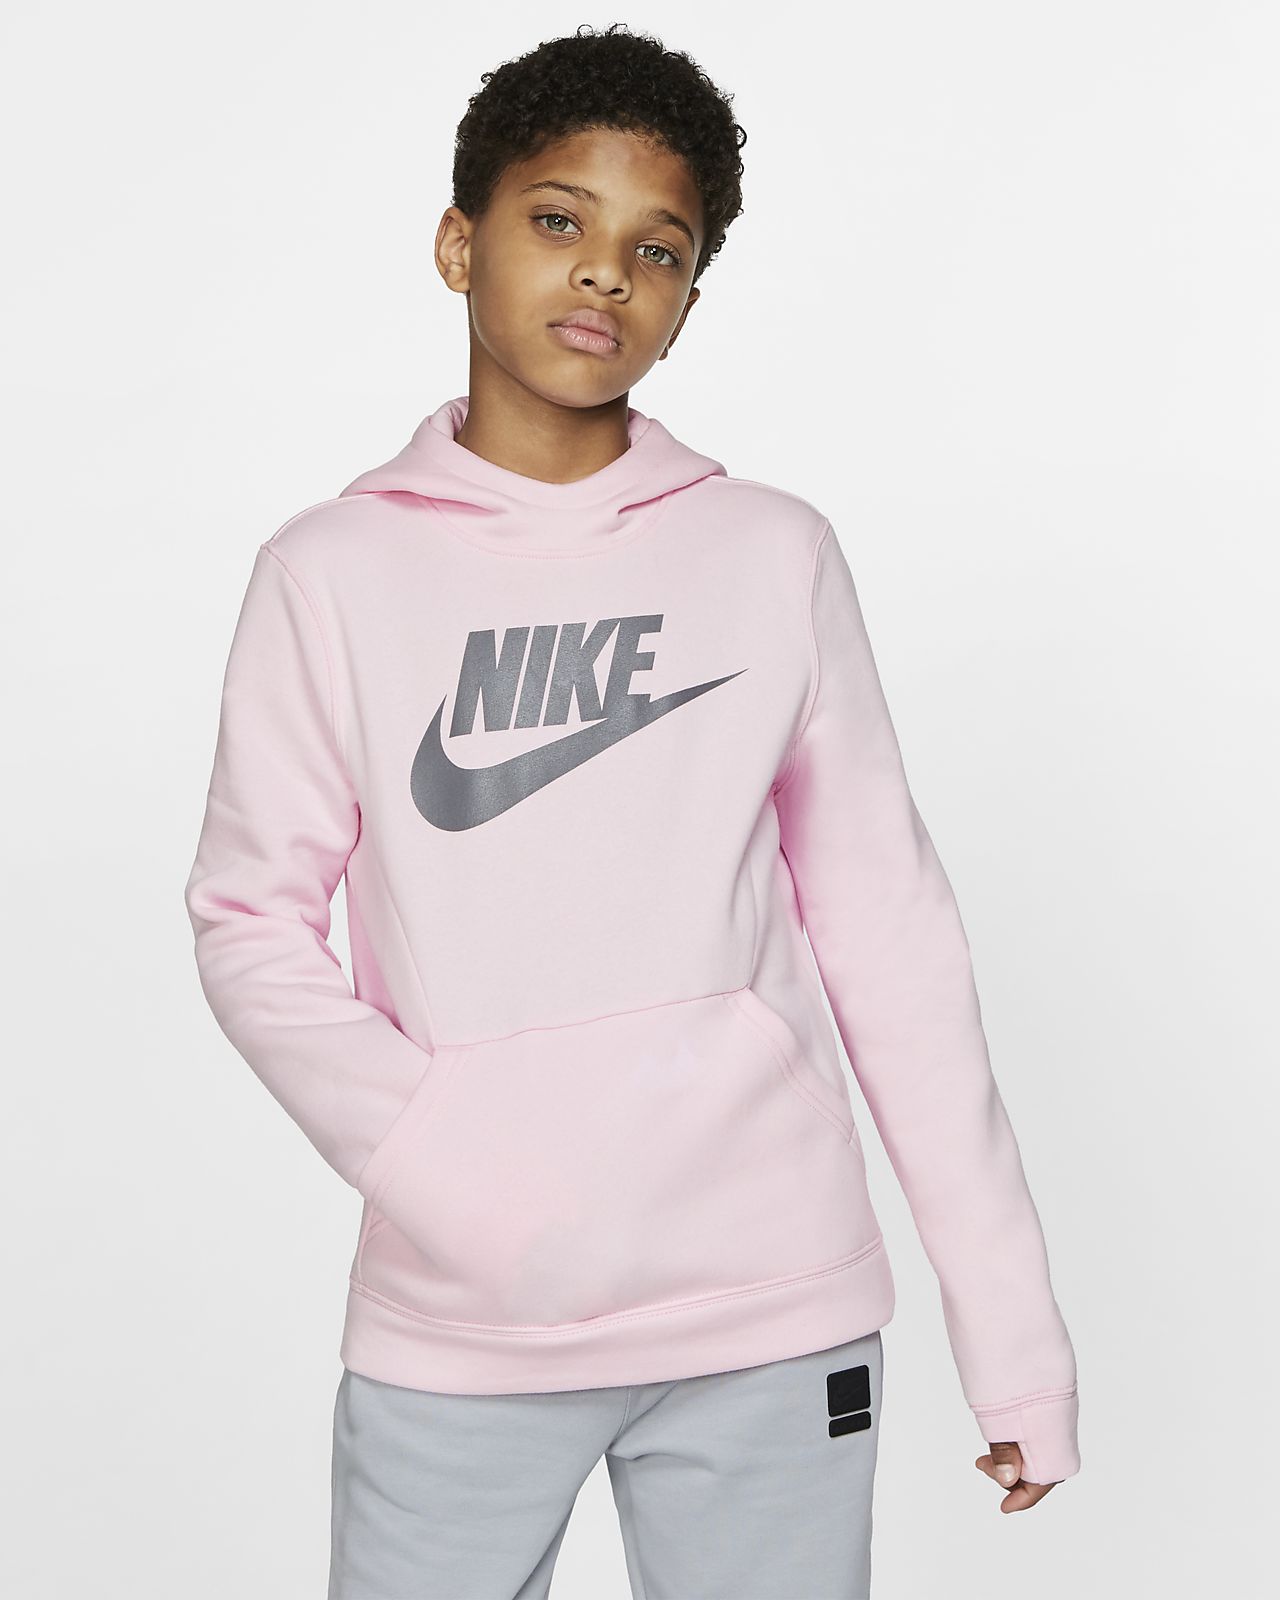 grey and pink nike hoodie